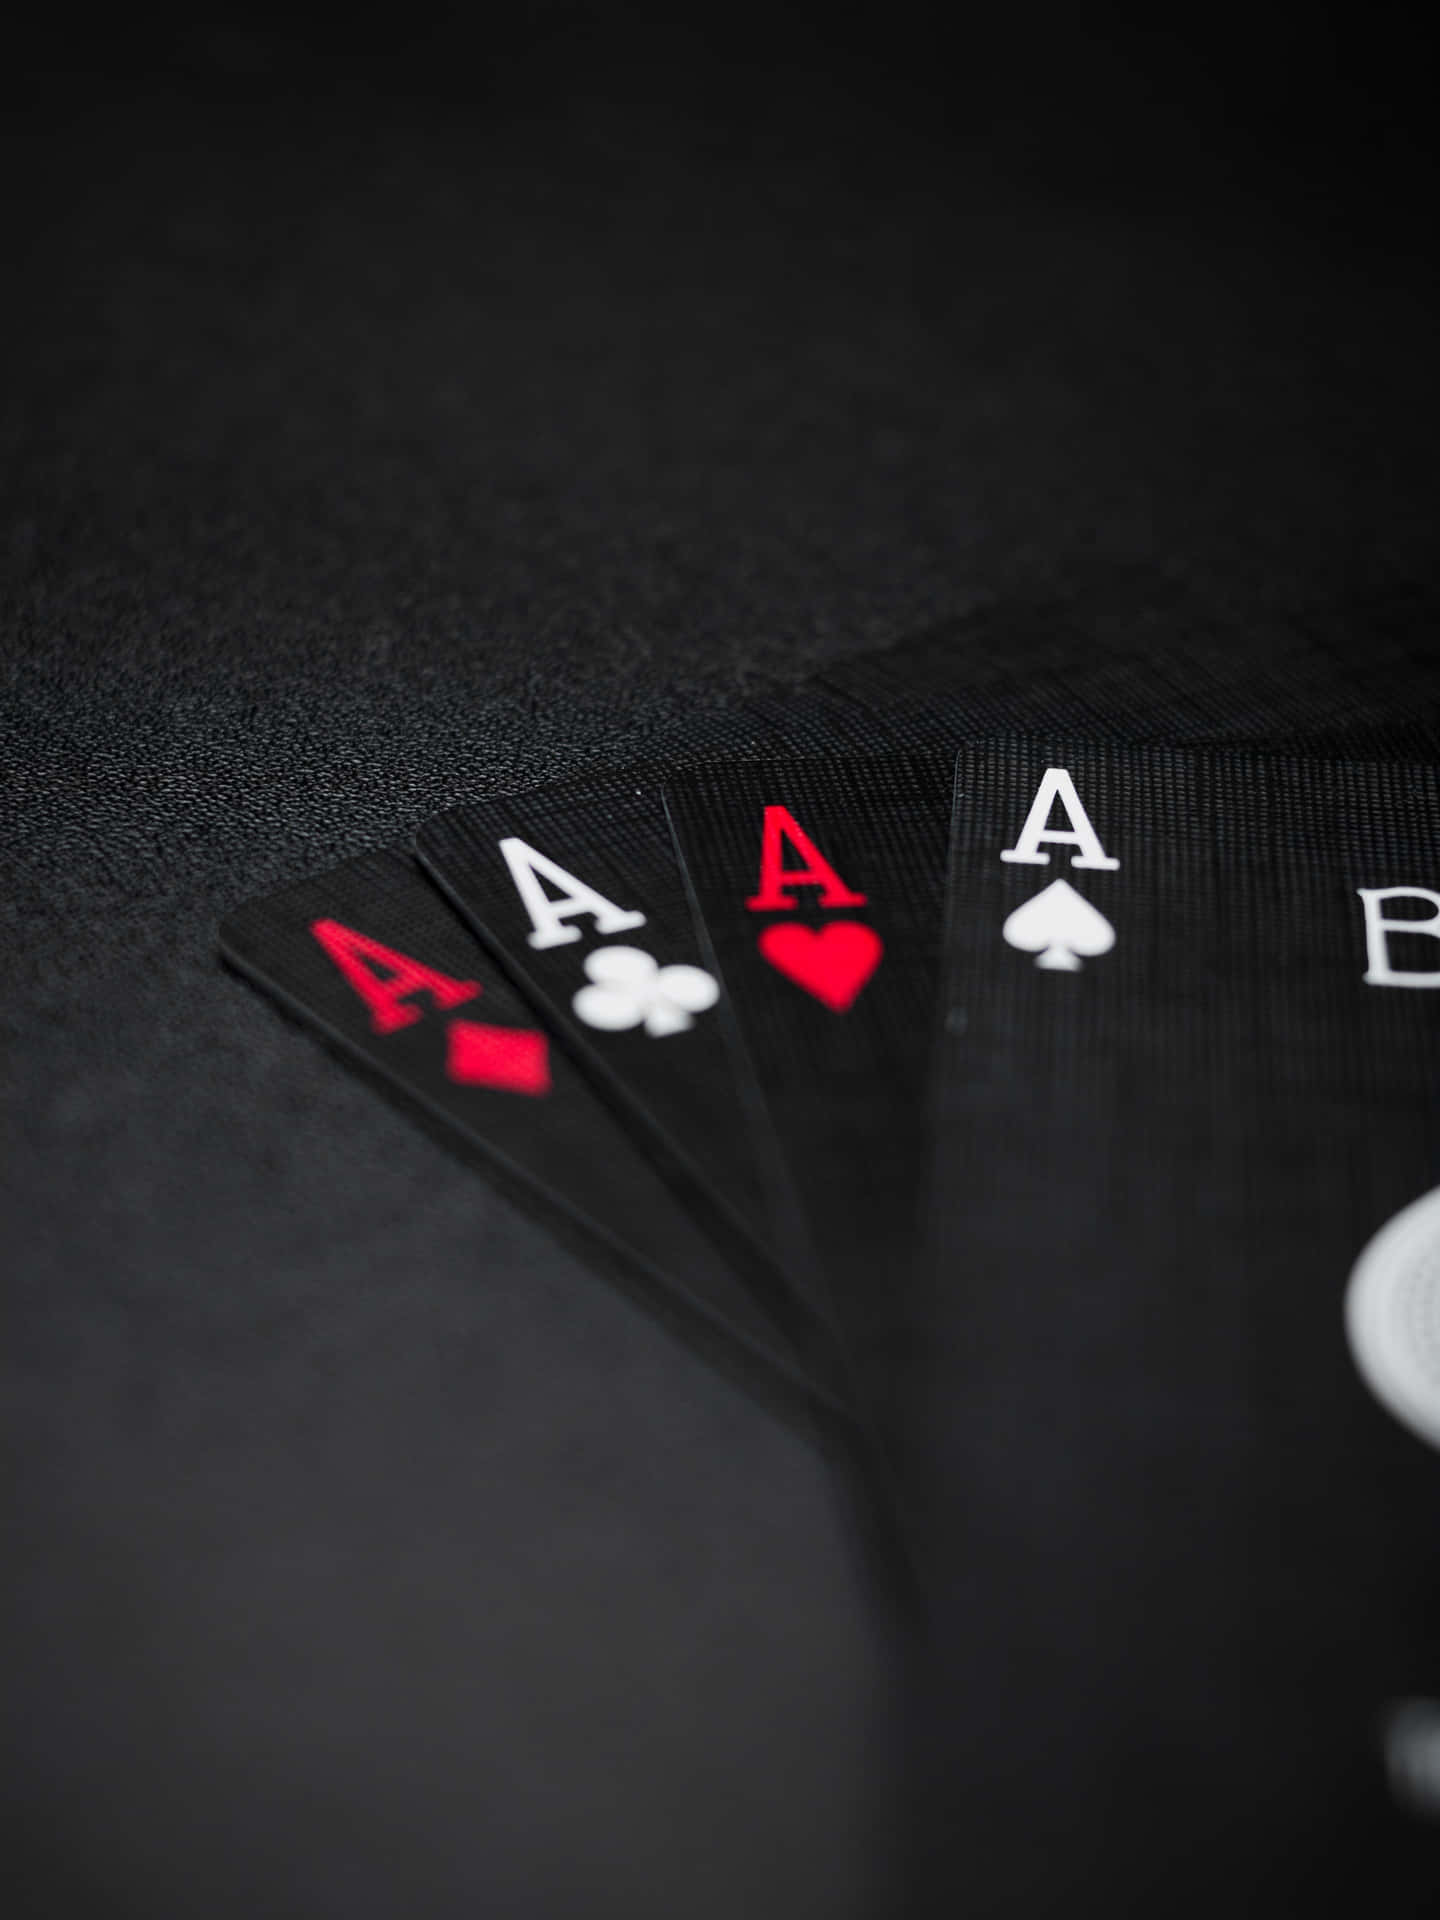 Fatele Vostre Scommesse Per Una Serata Di Poker